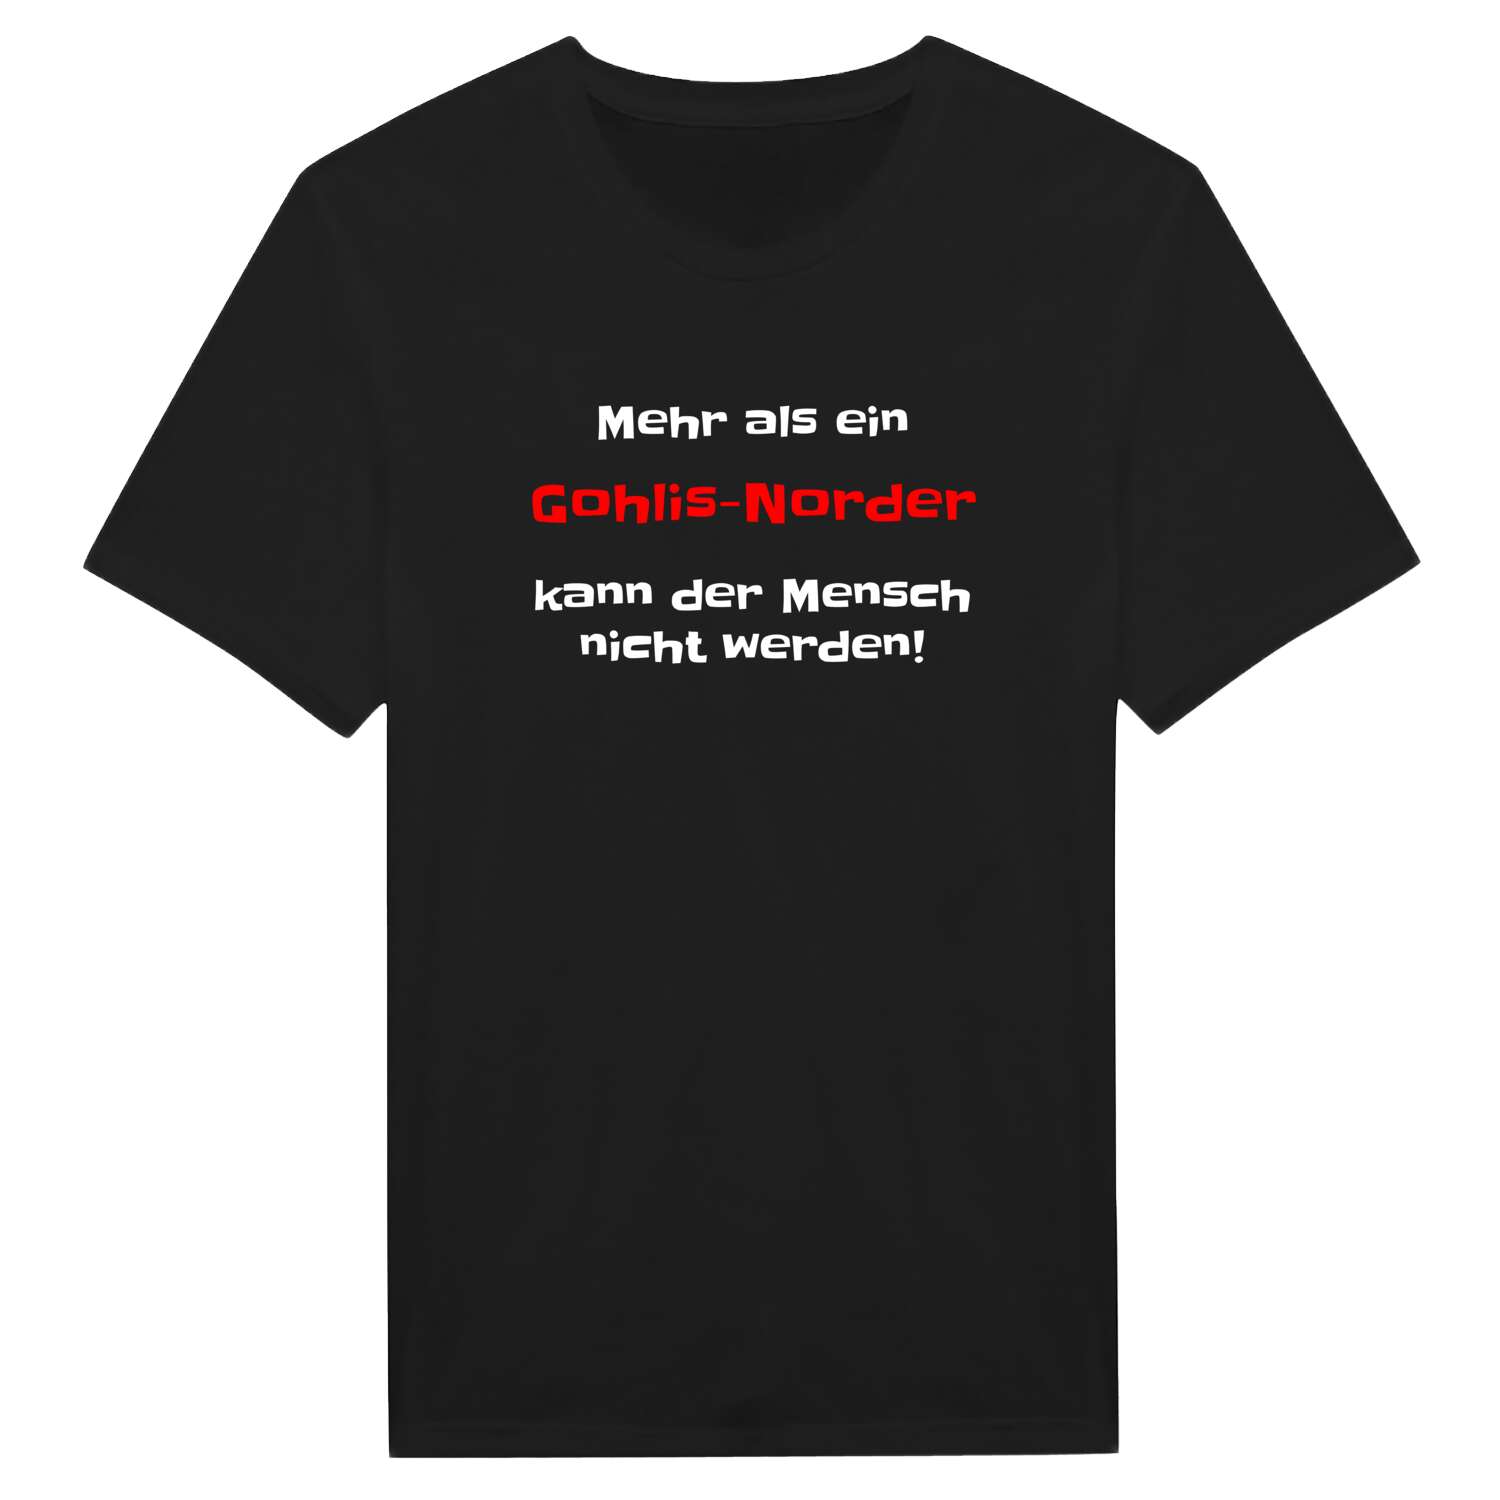 Gohlis-Nord T-Shirt »Mehr als ein«